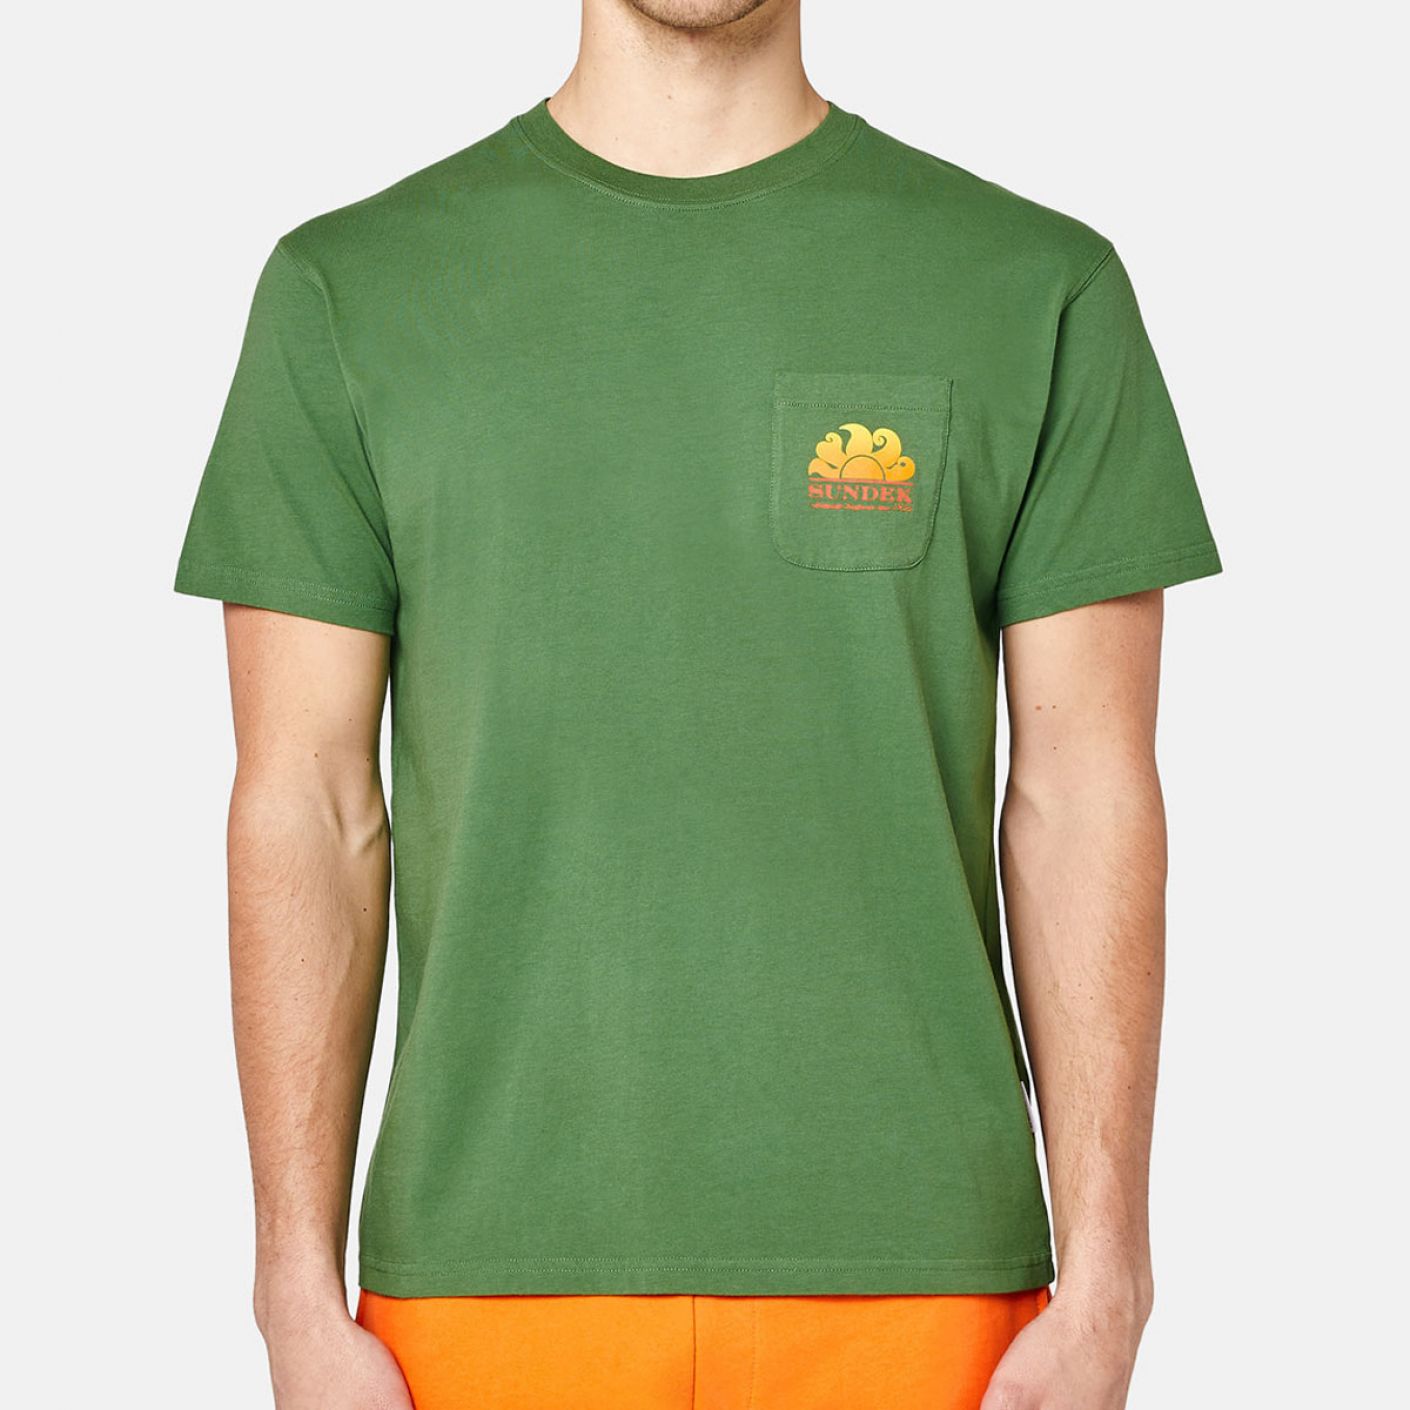 Sundek T-shirt New Herbert Shaded Verde